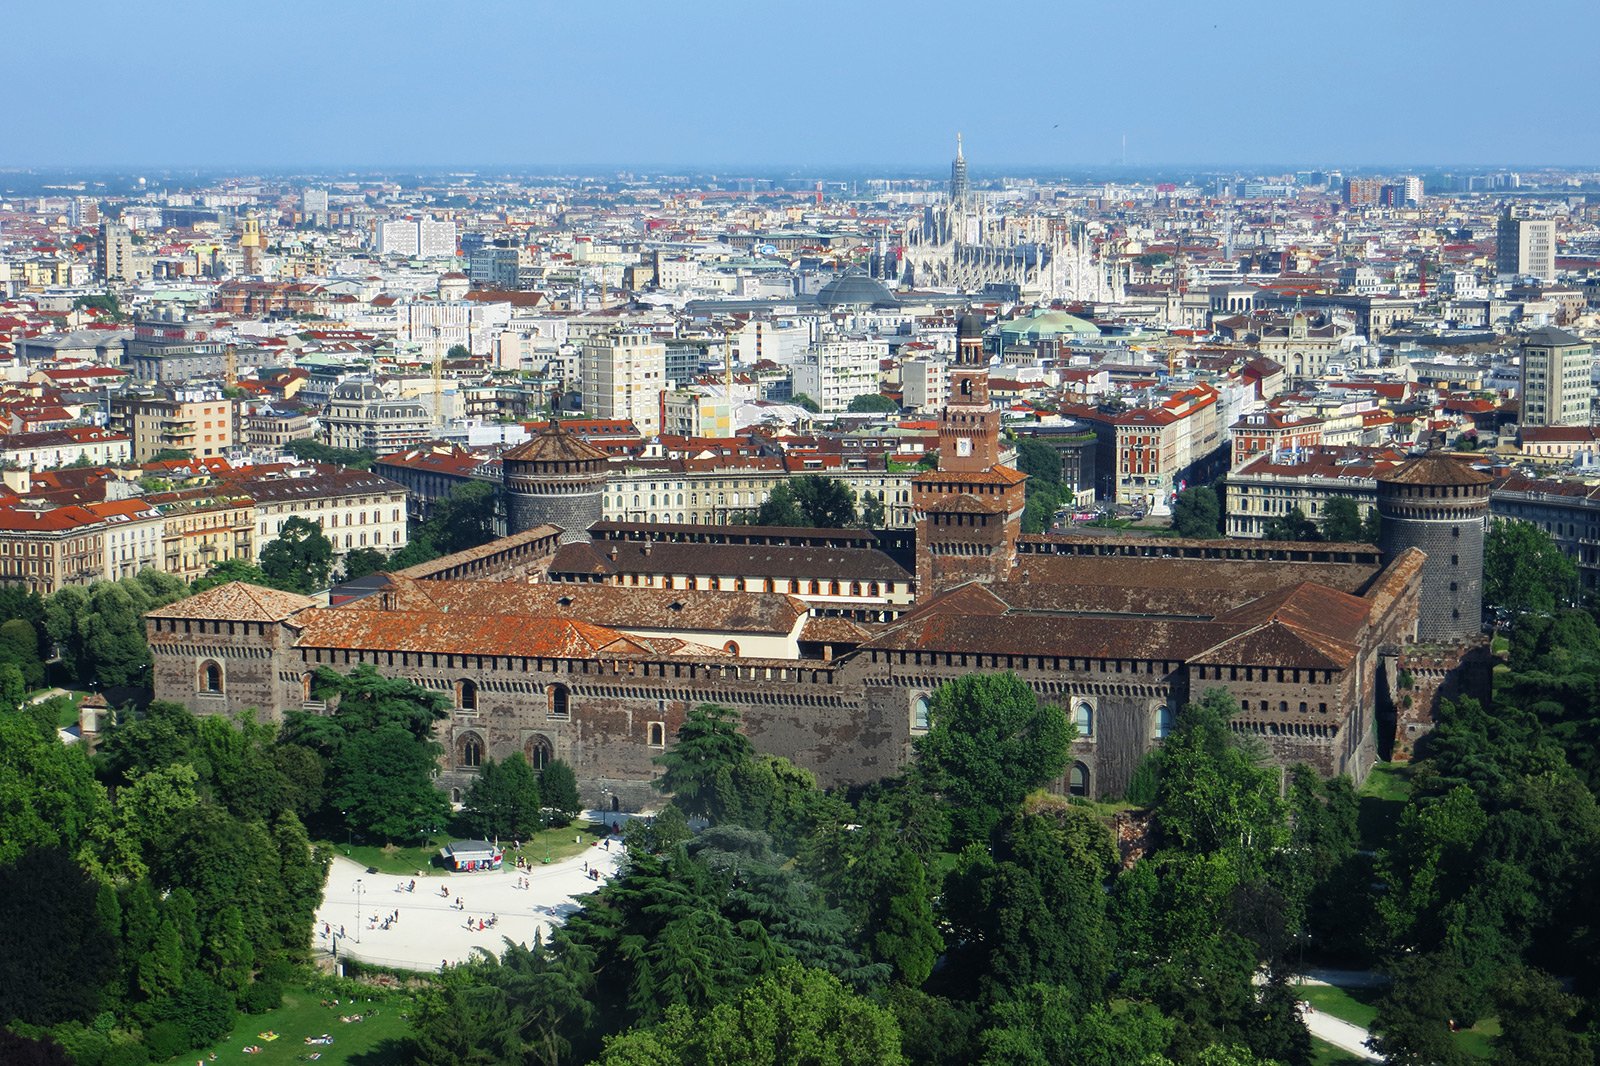 Sforza Castle, Milan